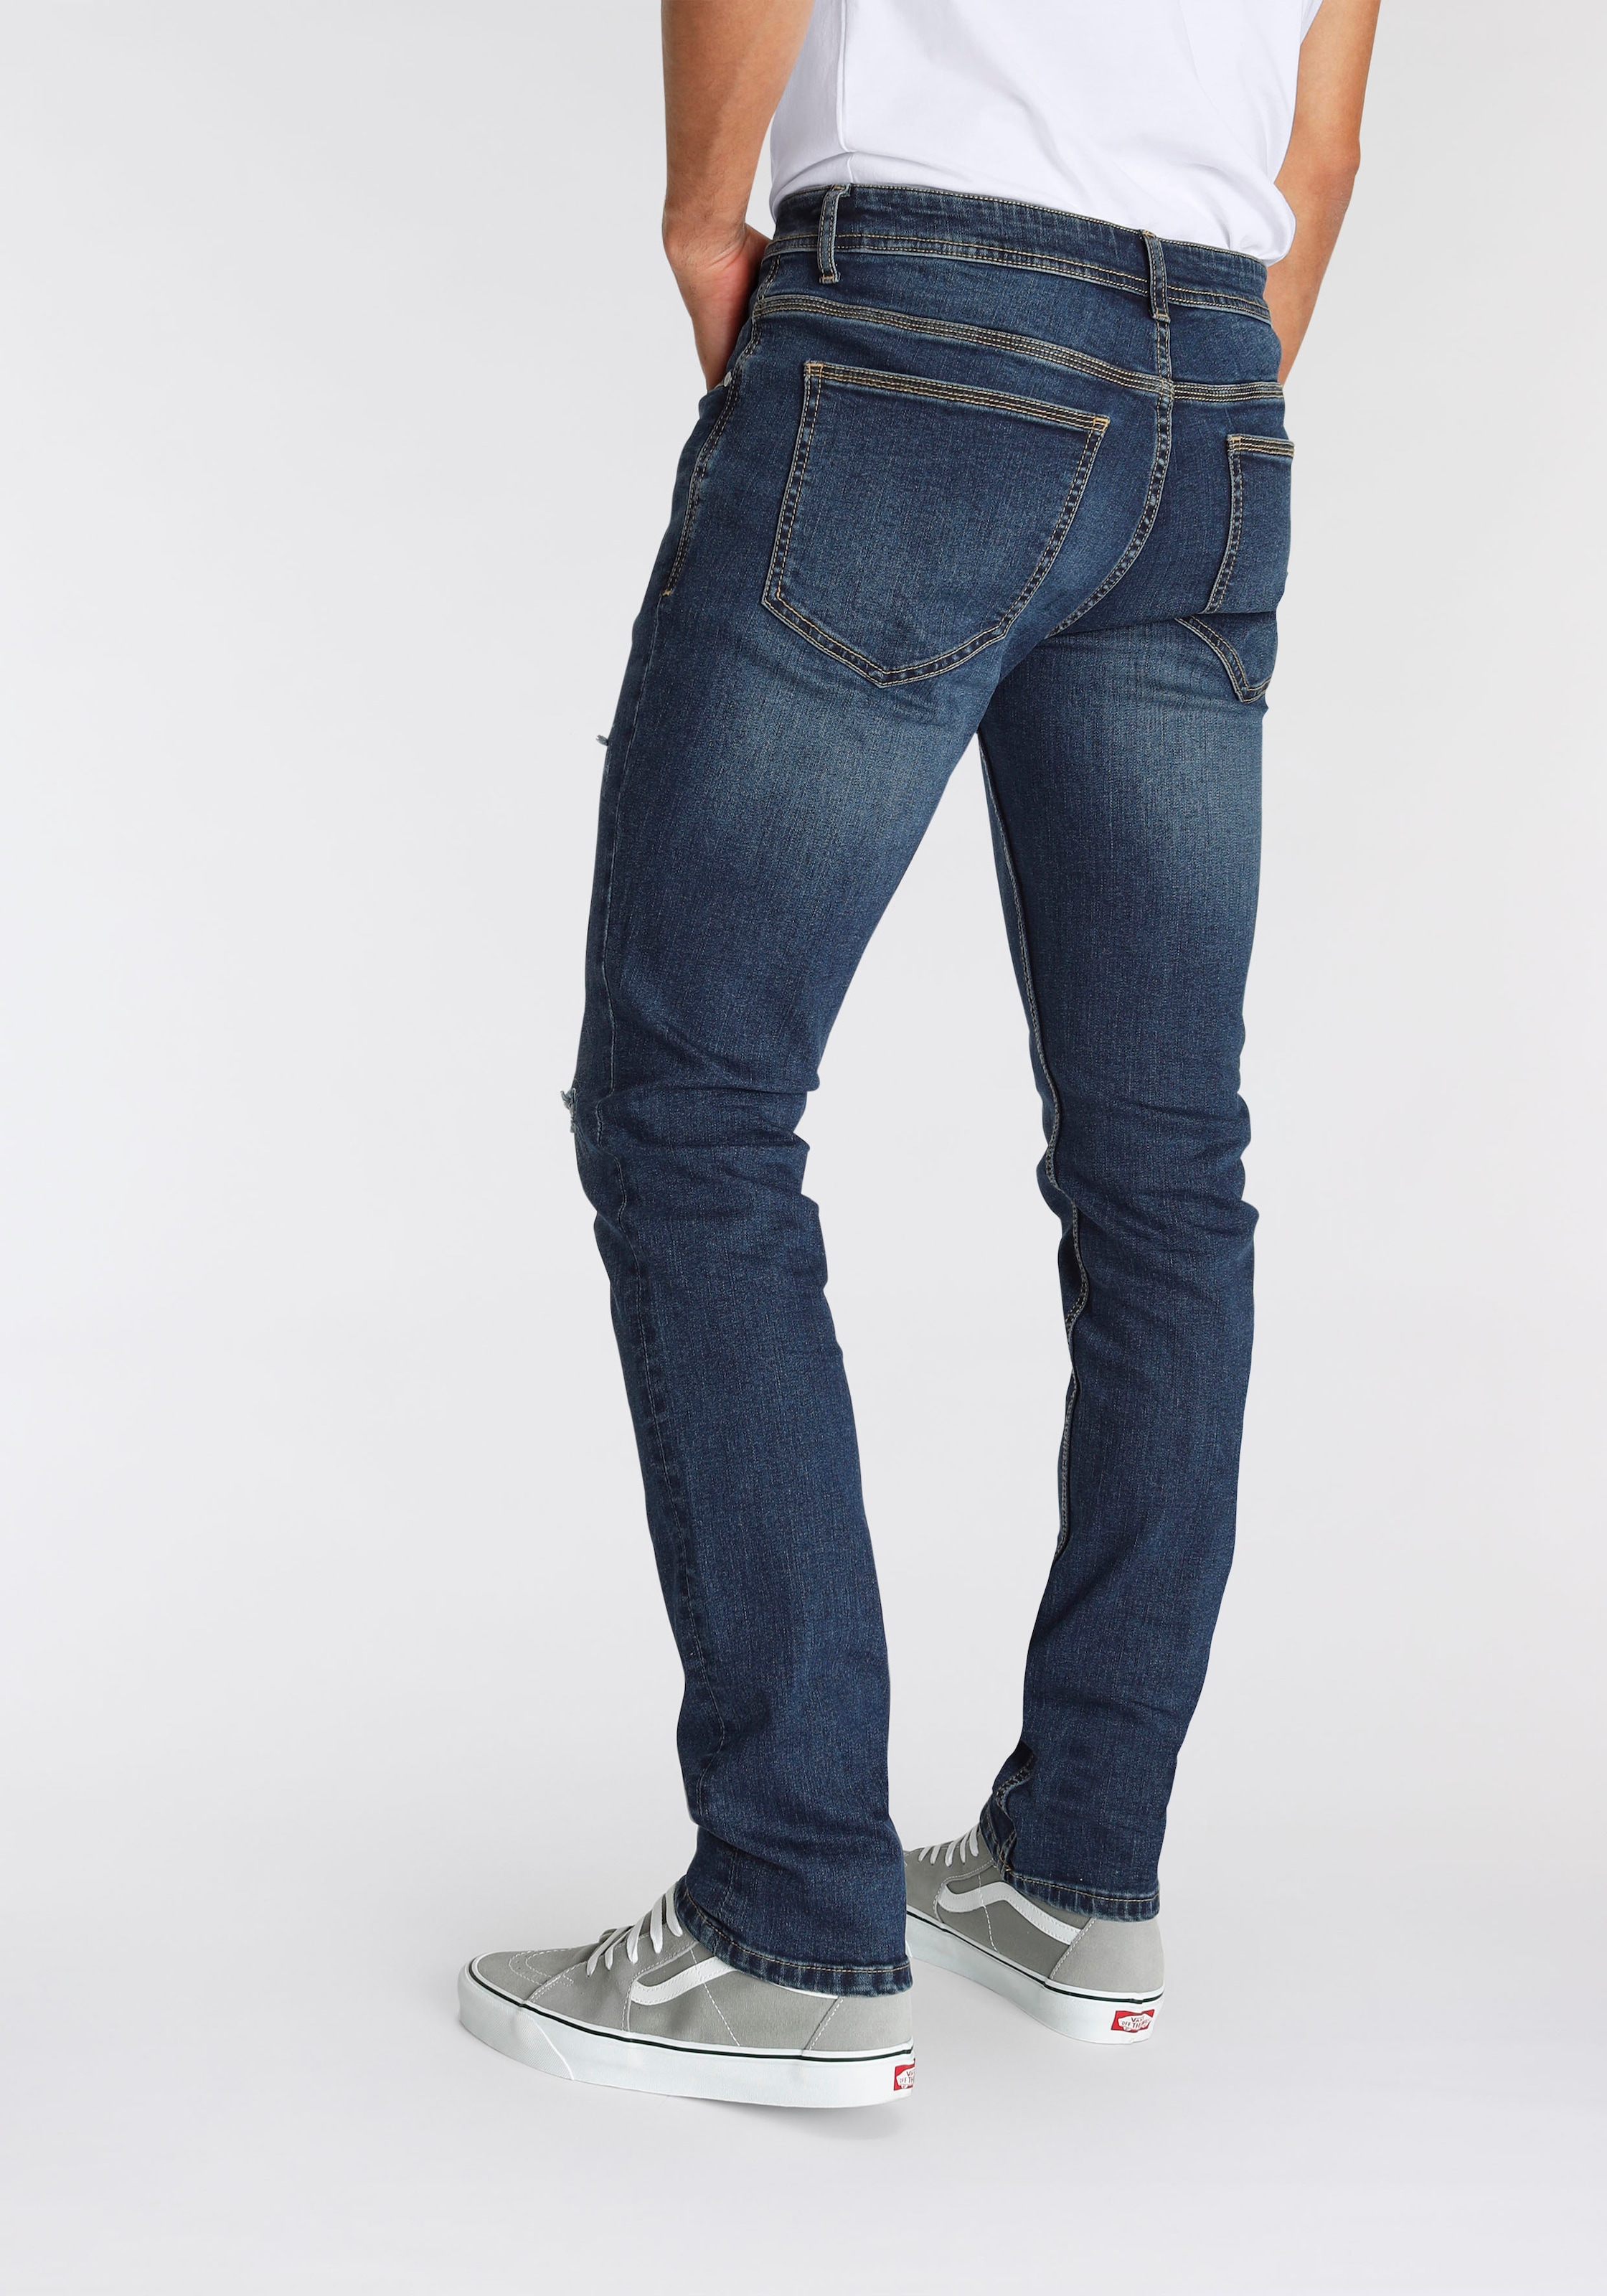 AJC Straight-Jeans, mit Abriebeffekten an den Beinen